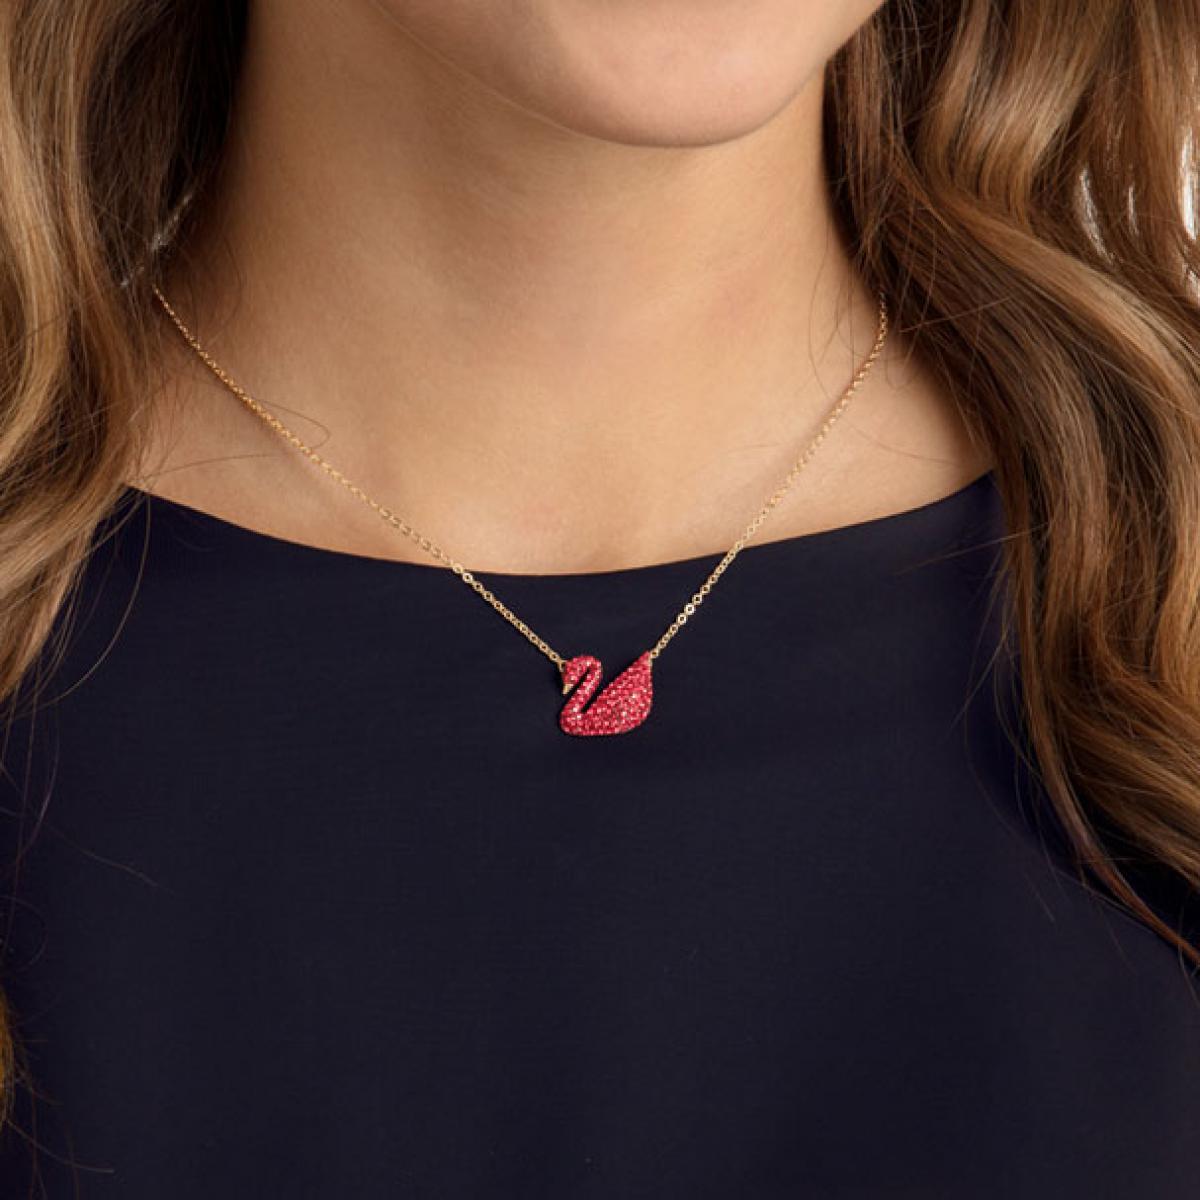 Collier et pendentif Swarovski 5465400 - Iconic swan, rouge, métal doré  Femme